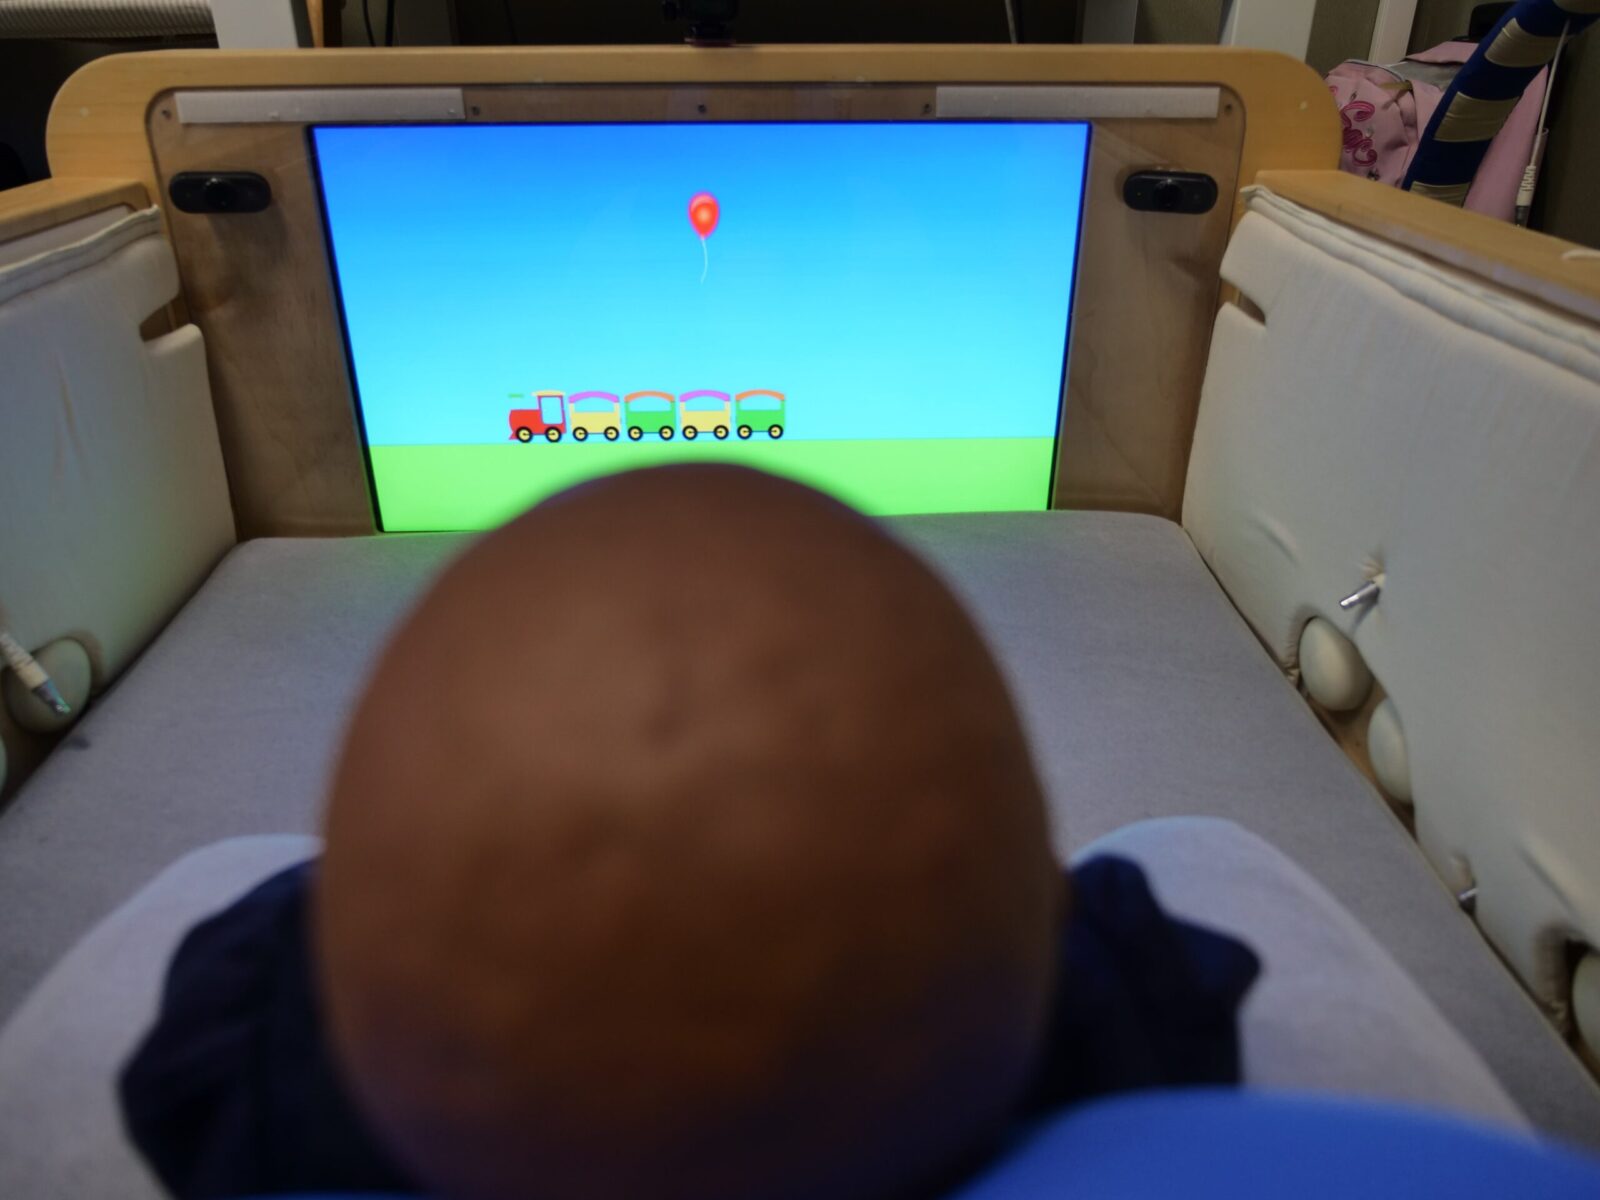 Giocattoli sensorizzati consentiranno di aiutare a diagnosticare precocemente i disturbi del neurosviluppo nei bambini appena nati